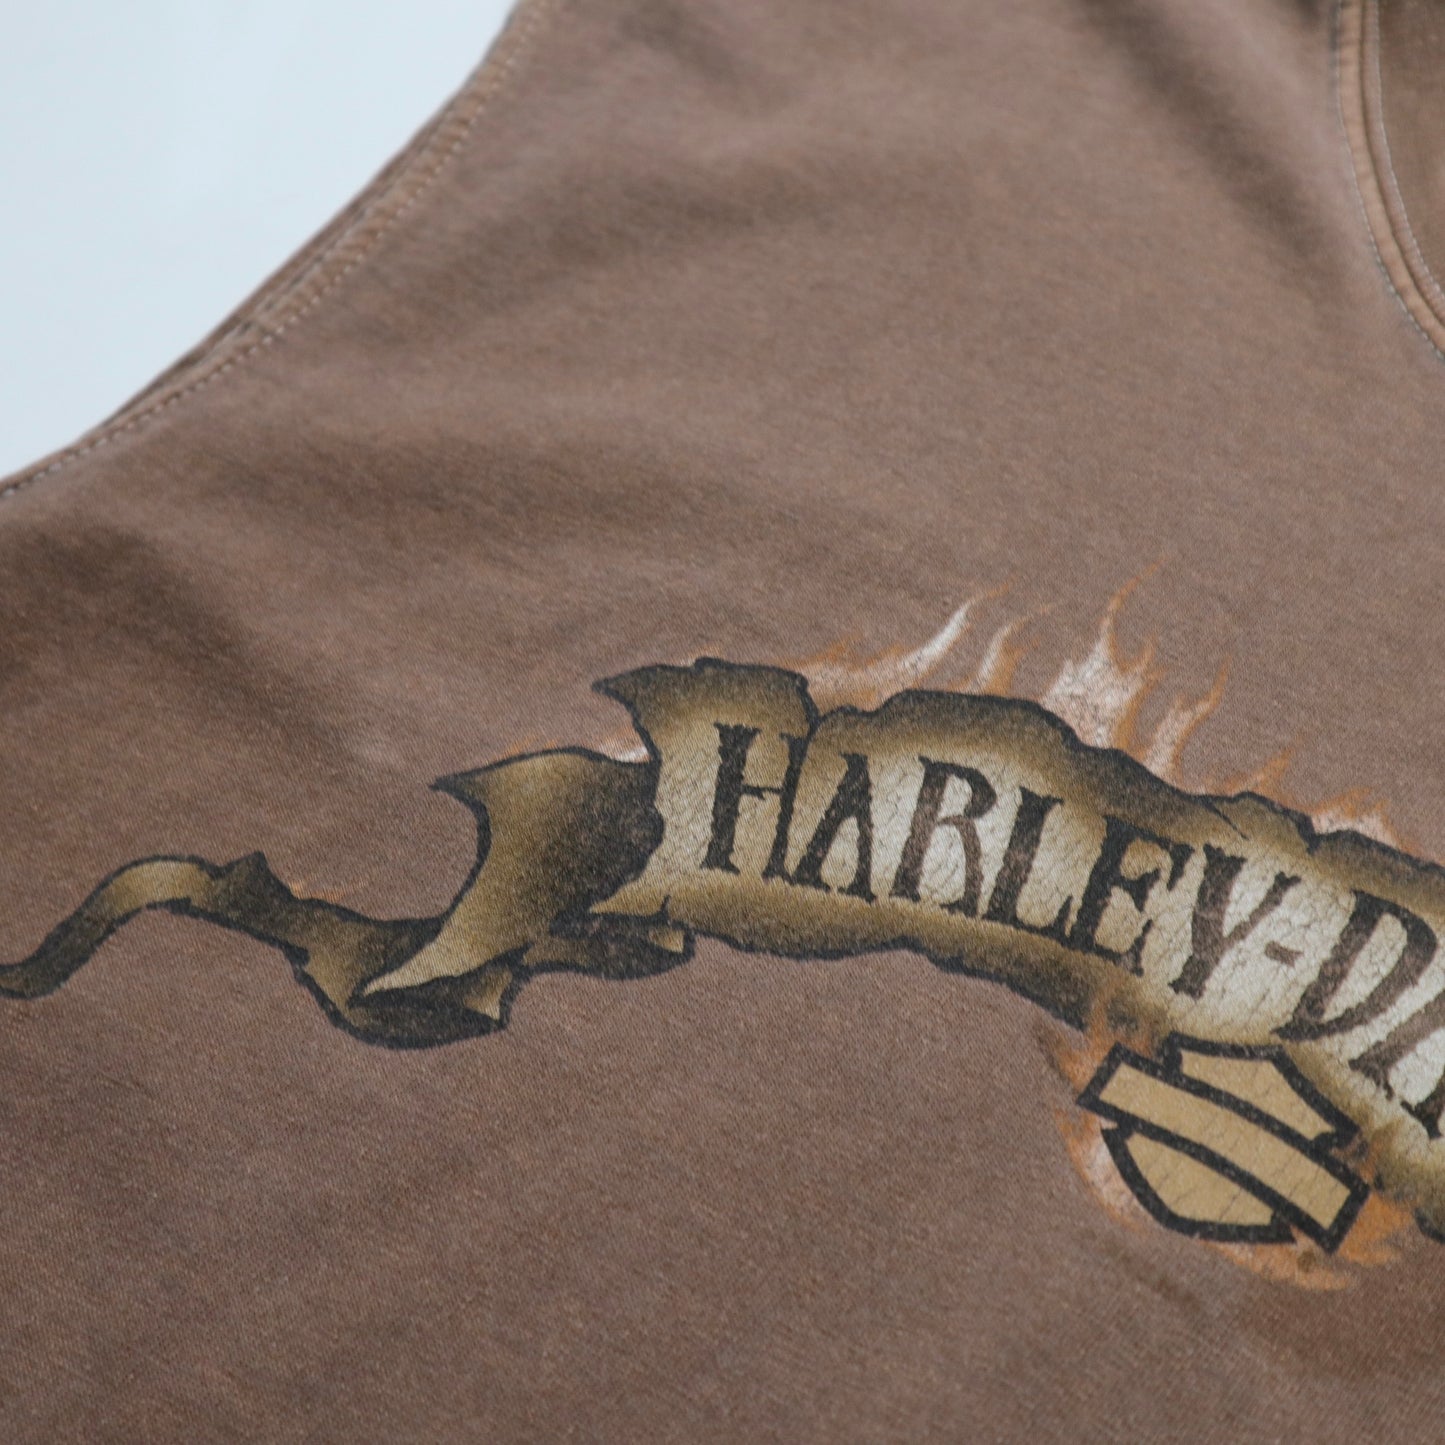 00s American-made HARLEY-DAVIDSON Brown Eagle Harley Vest